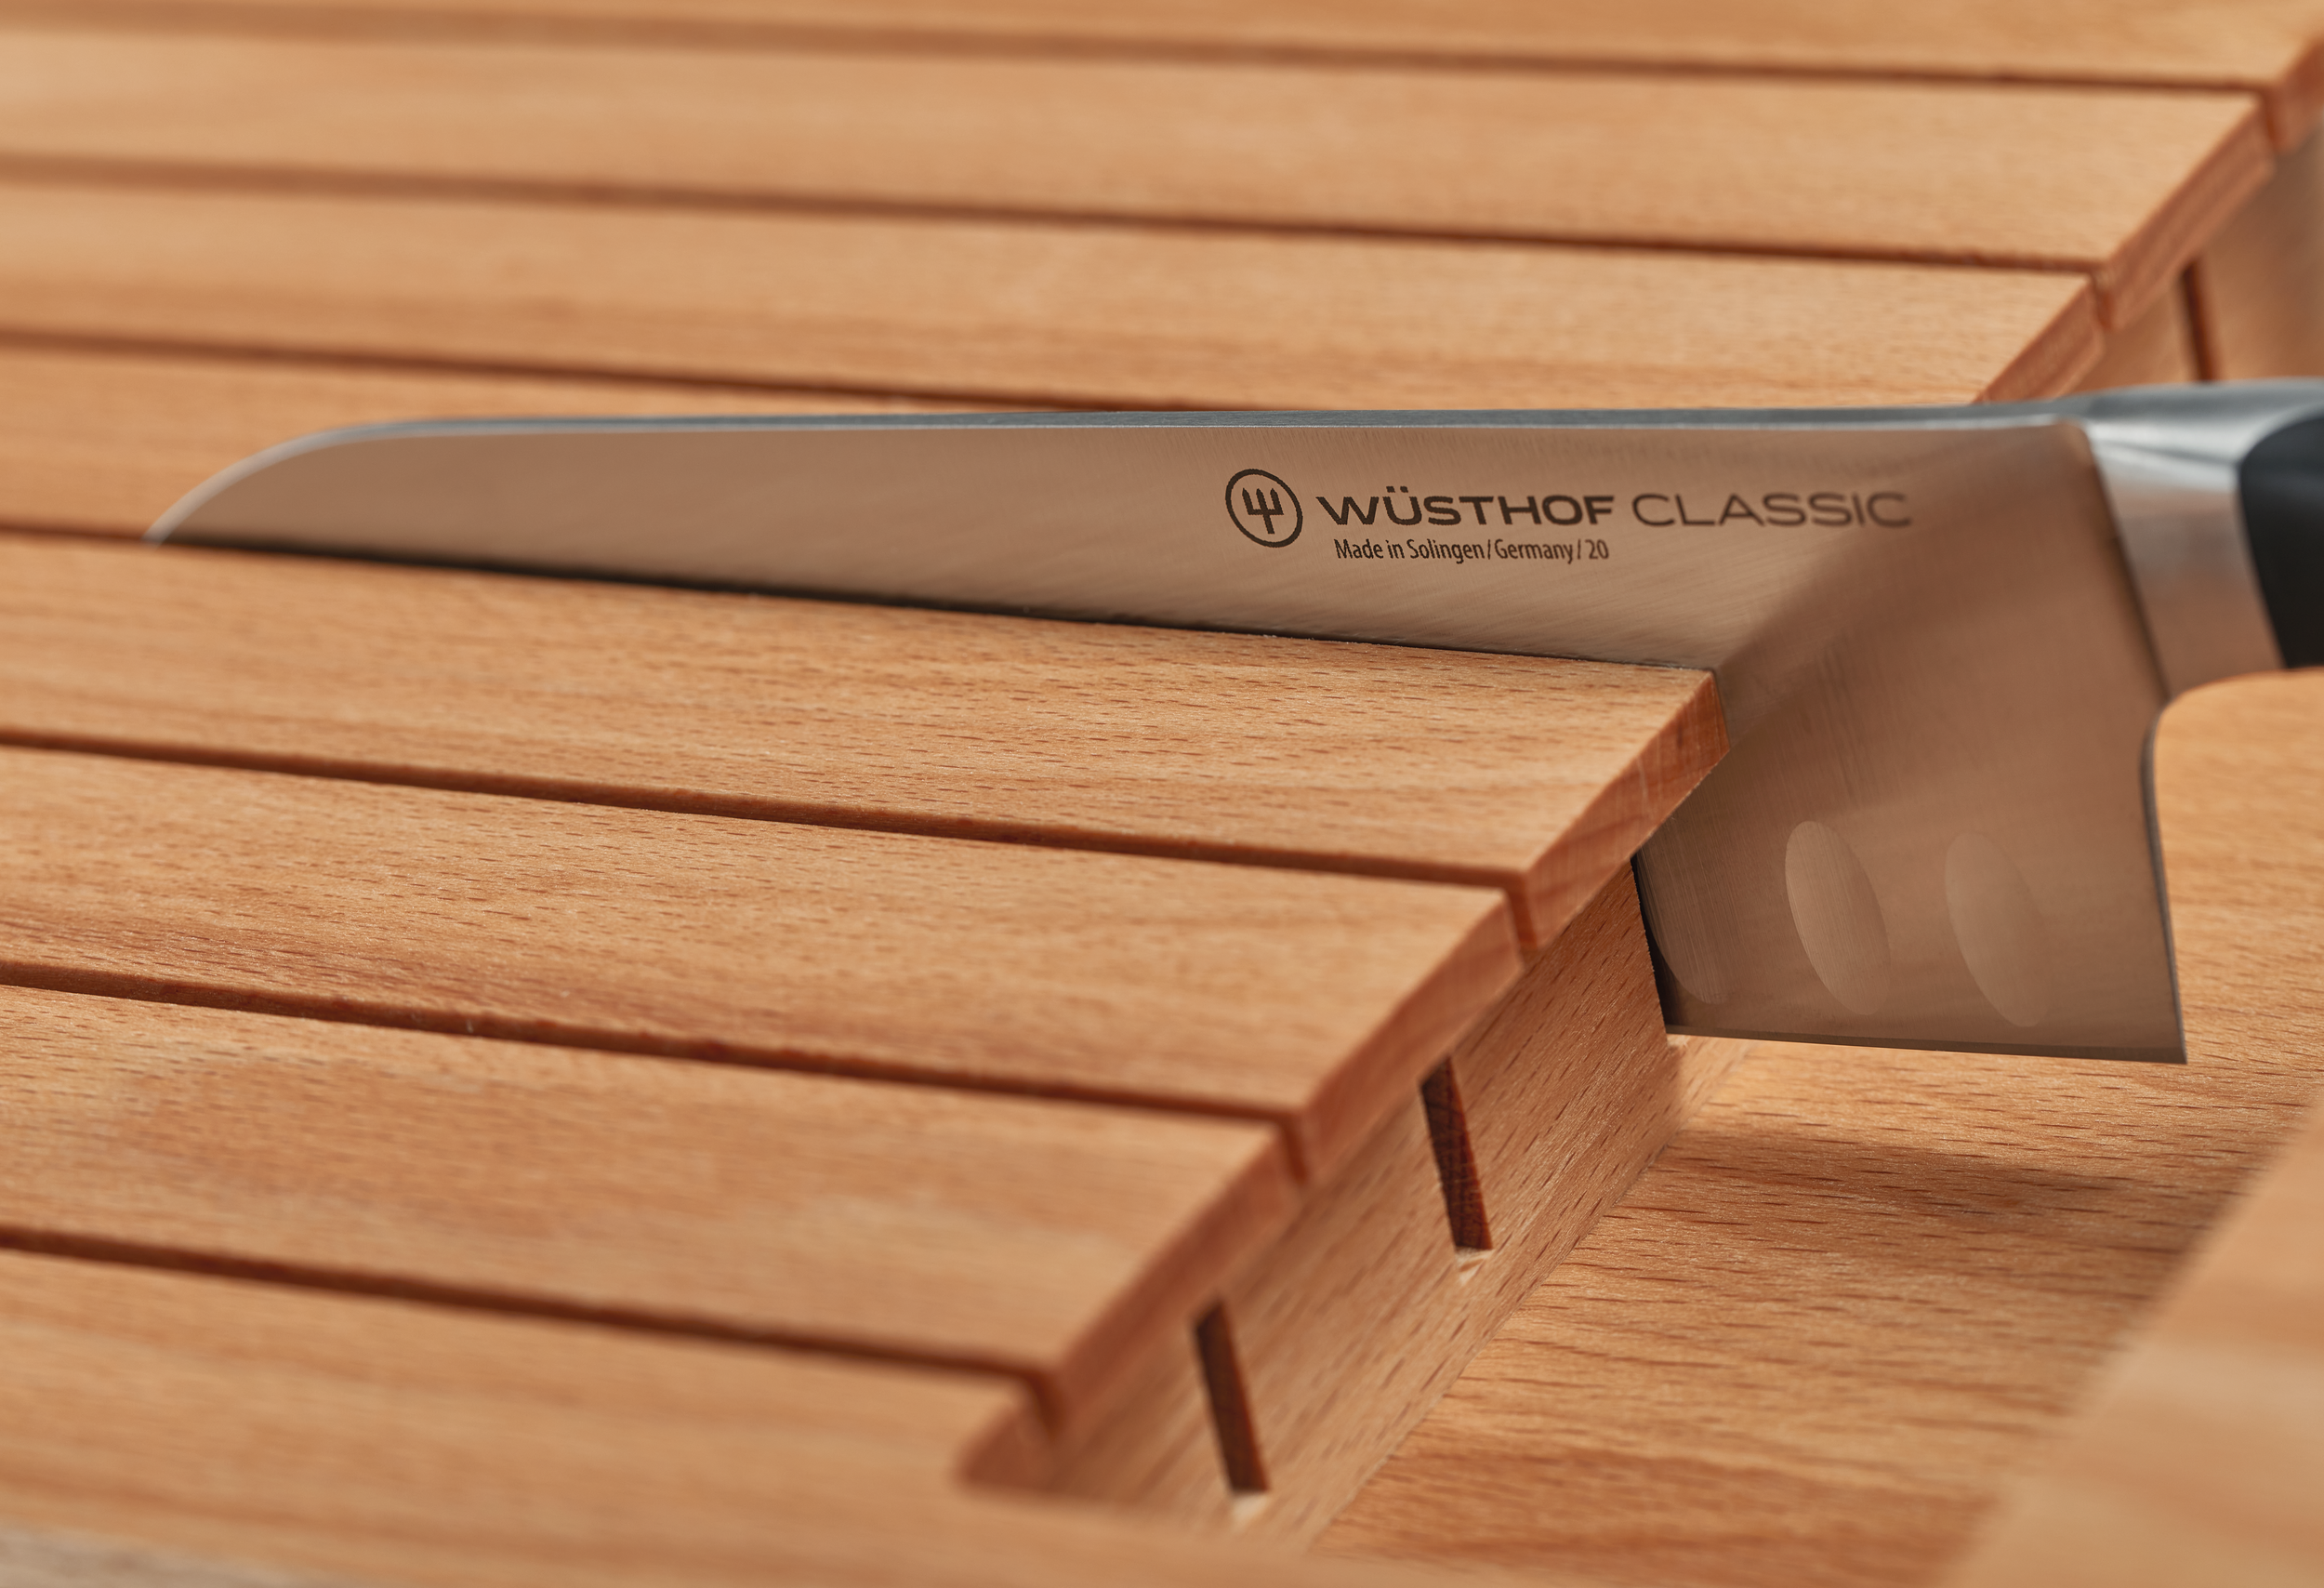 Wusthof In-drawer knife organiser 43x22.2x4.4cm 2159620702